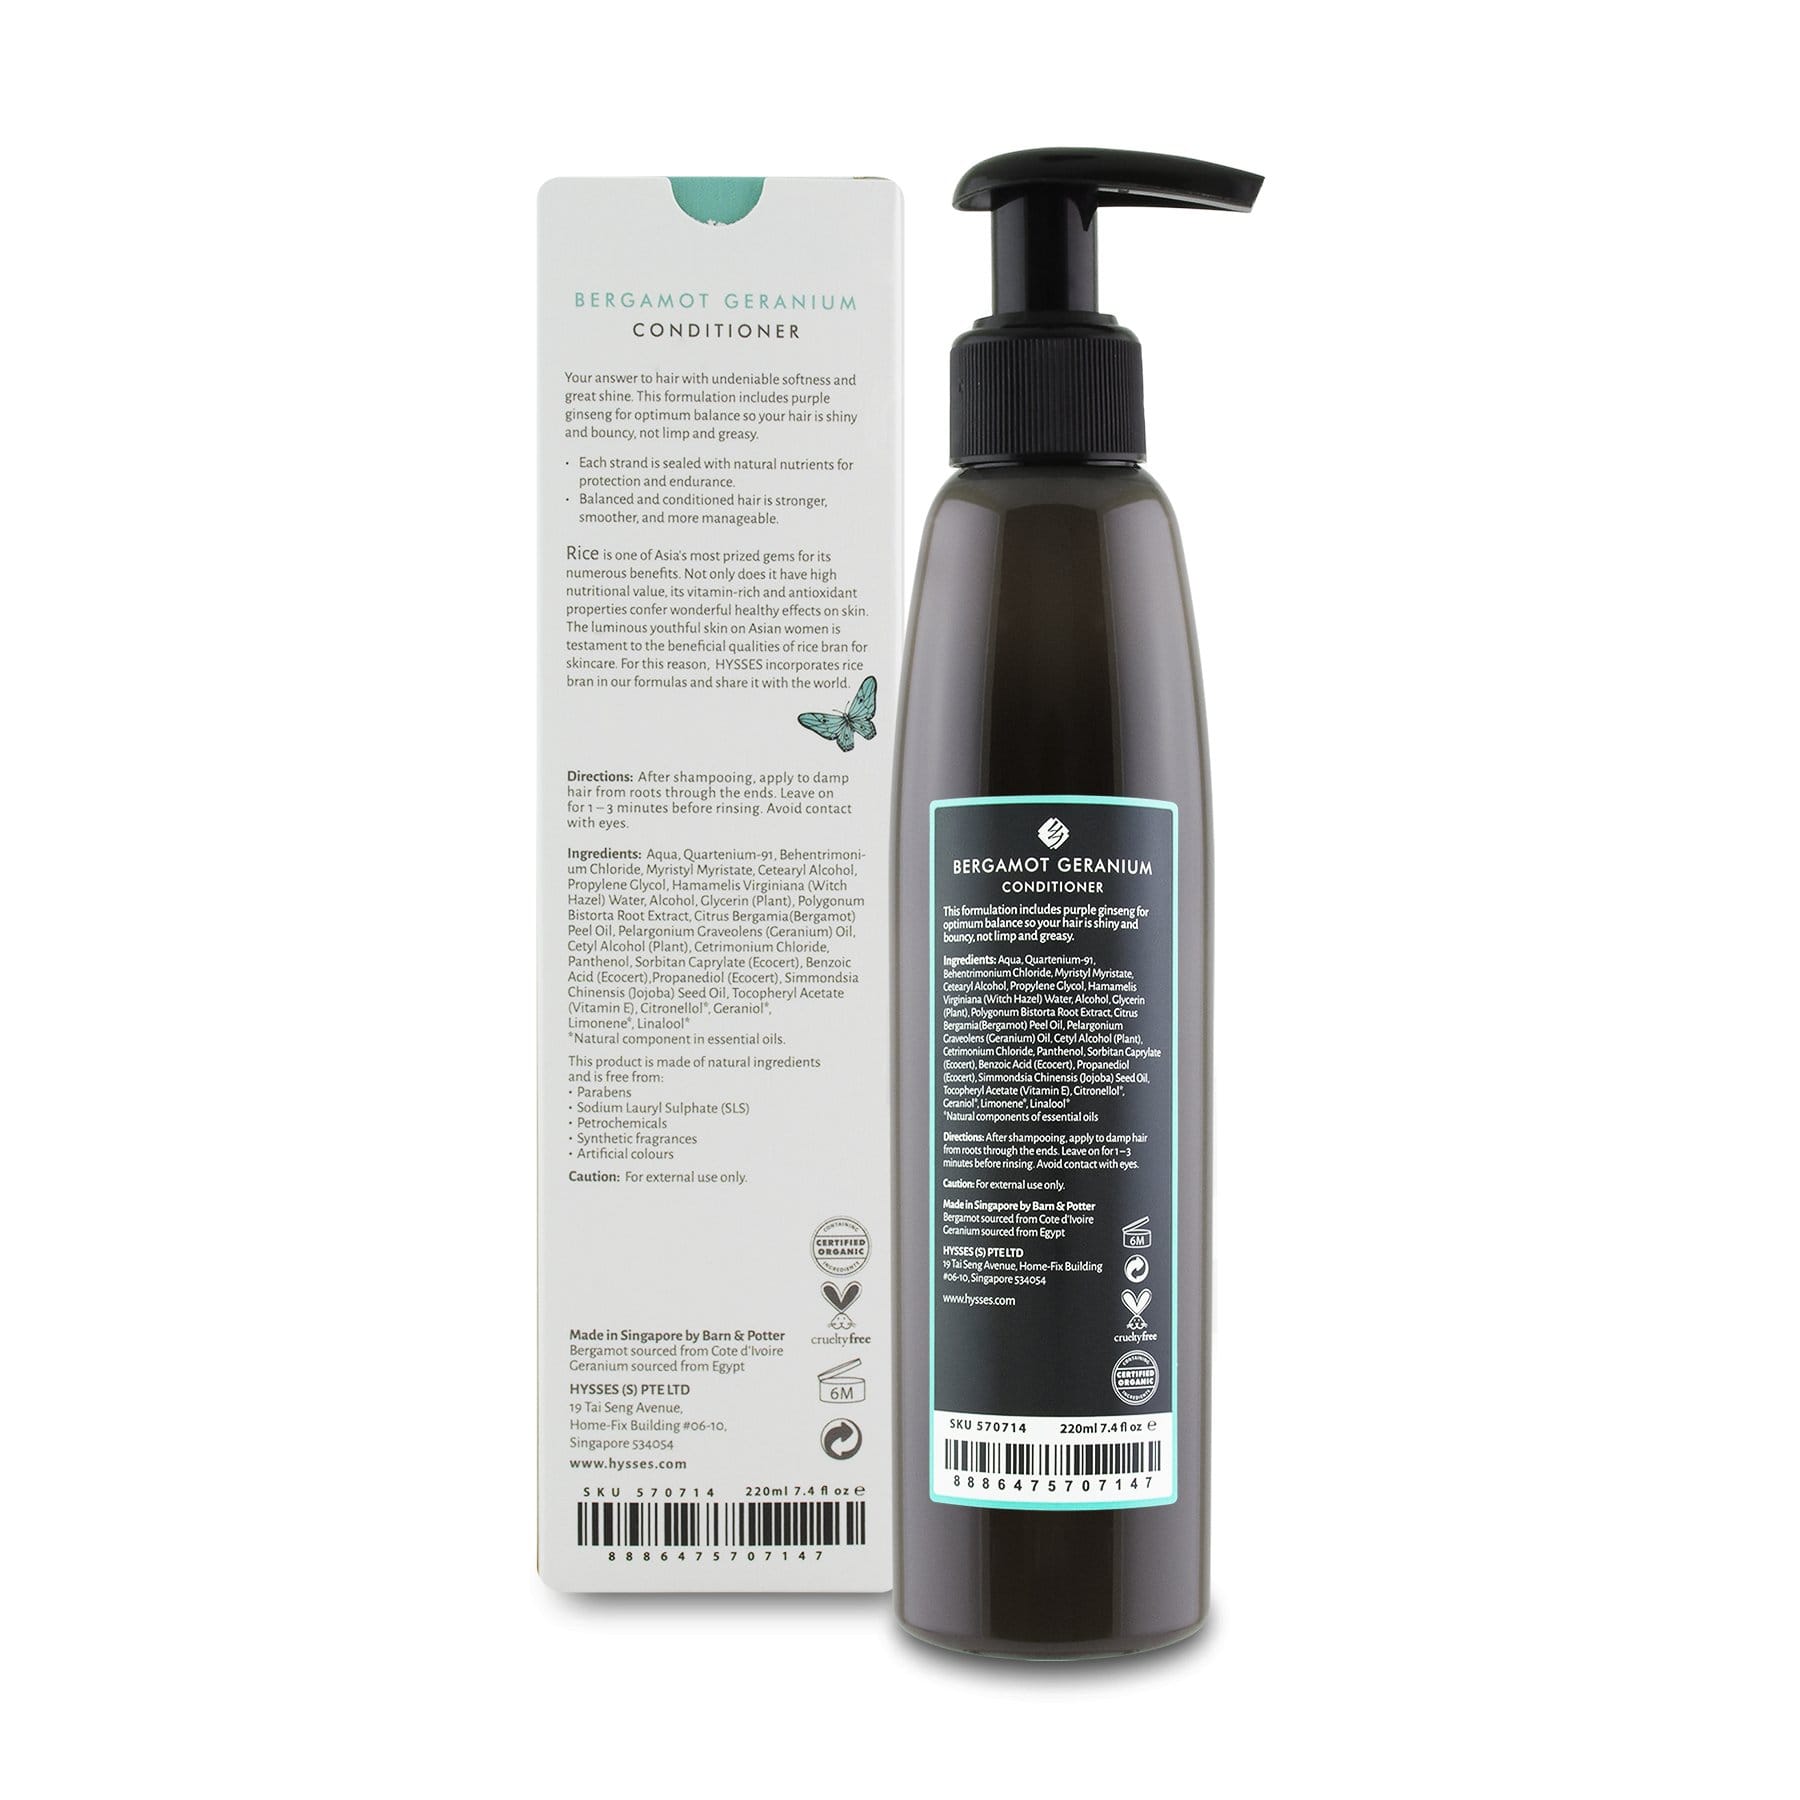 Hysses Hair Care Conditioner Bergamot Geranium, 220ml